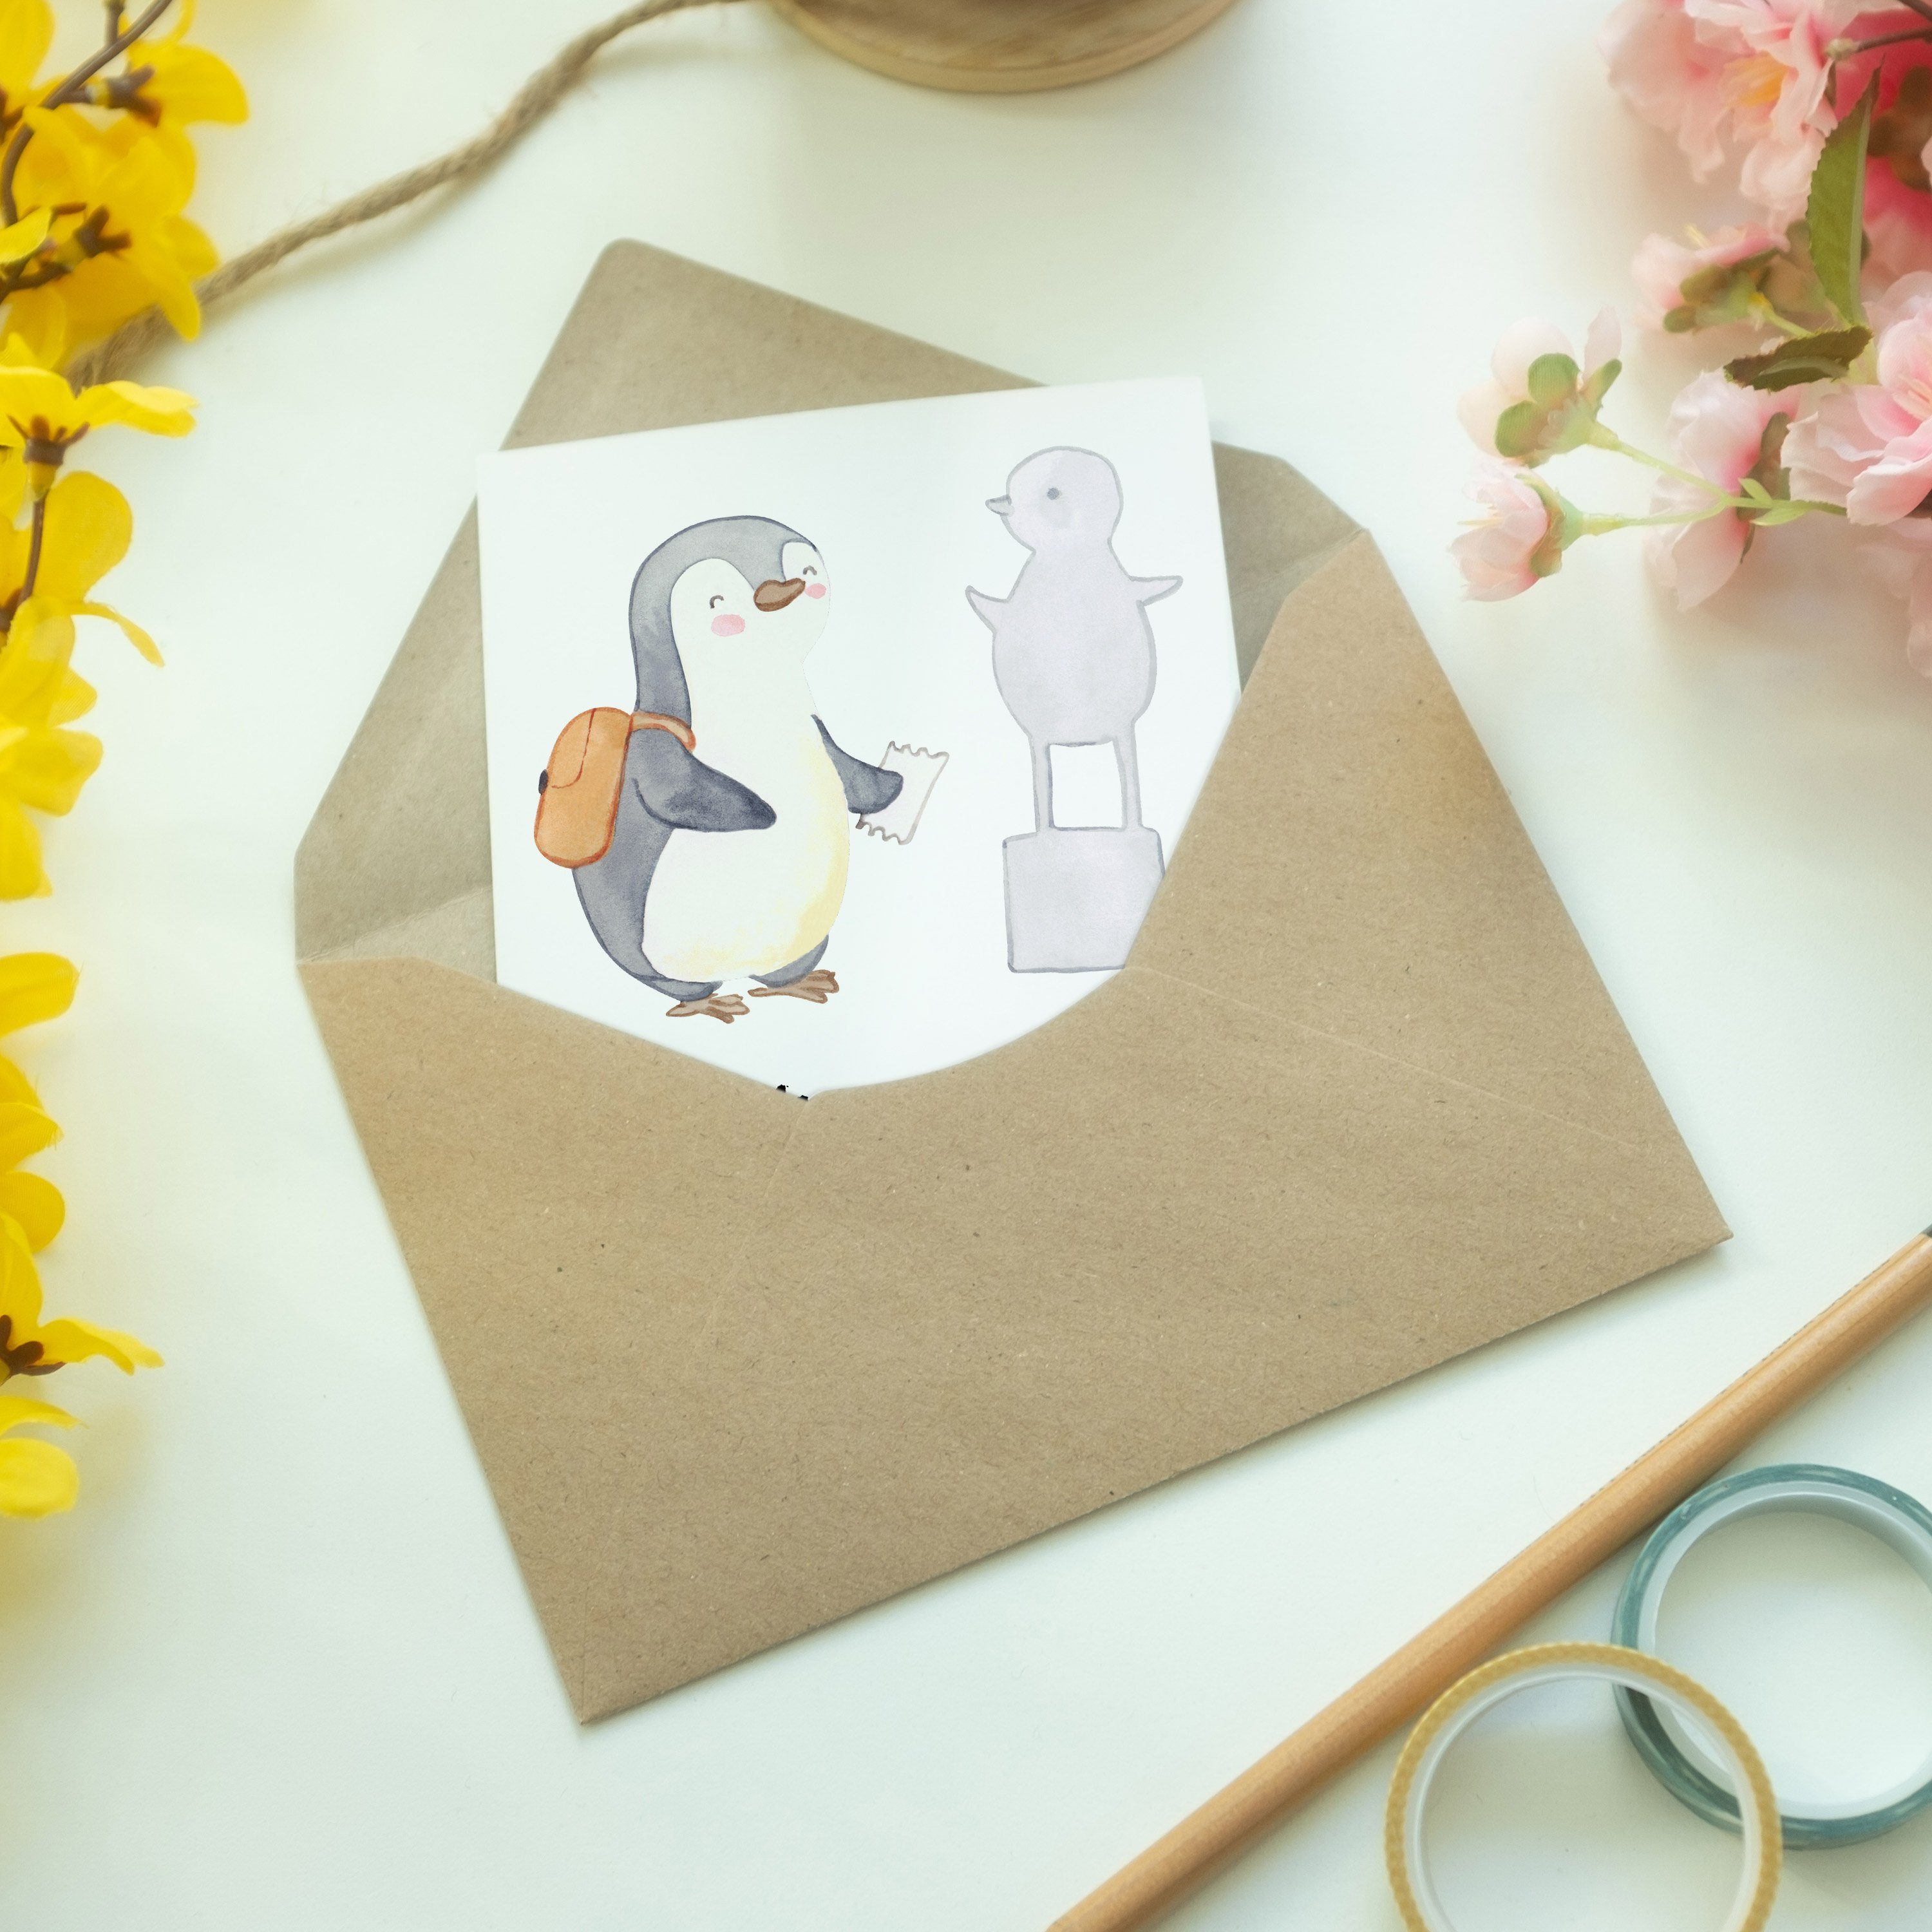 - & Grußkarte Geburtstagskarte besuchen Pinguin Weiß Geschenk, Mr. - Medizin Panda Mrs. Museum